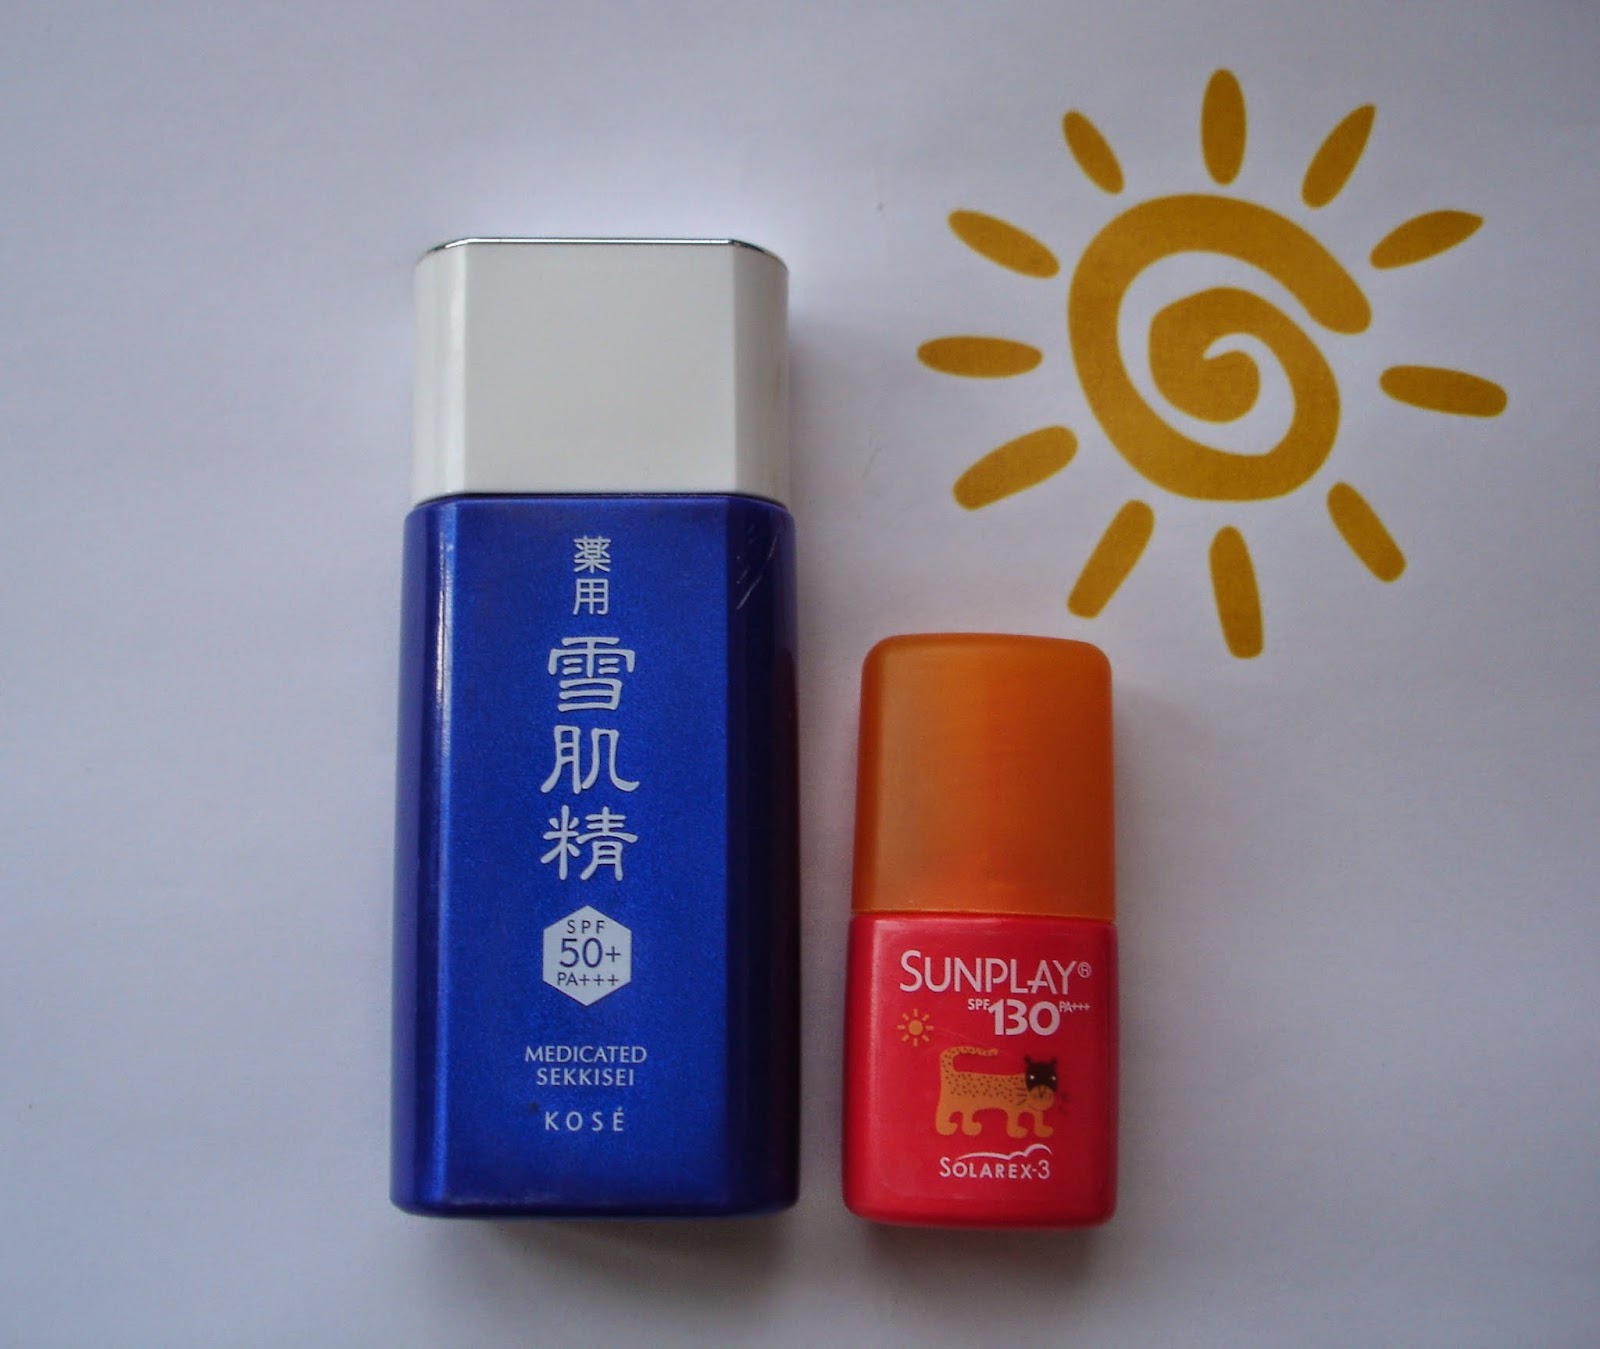 Kose Medicated Sekkisei Sun Protector Spf50 Mentholatum Sunplay Super Block Spf130 